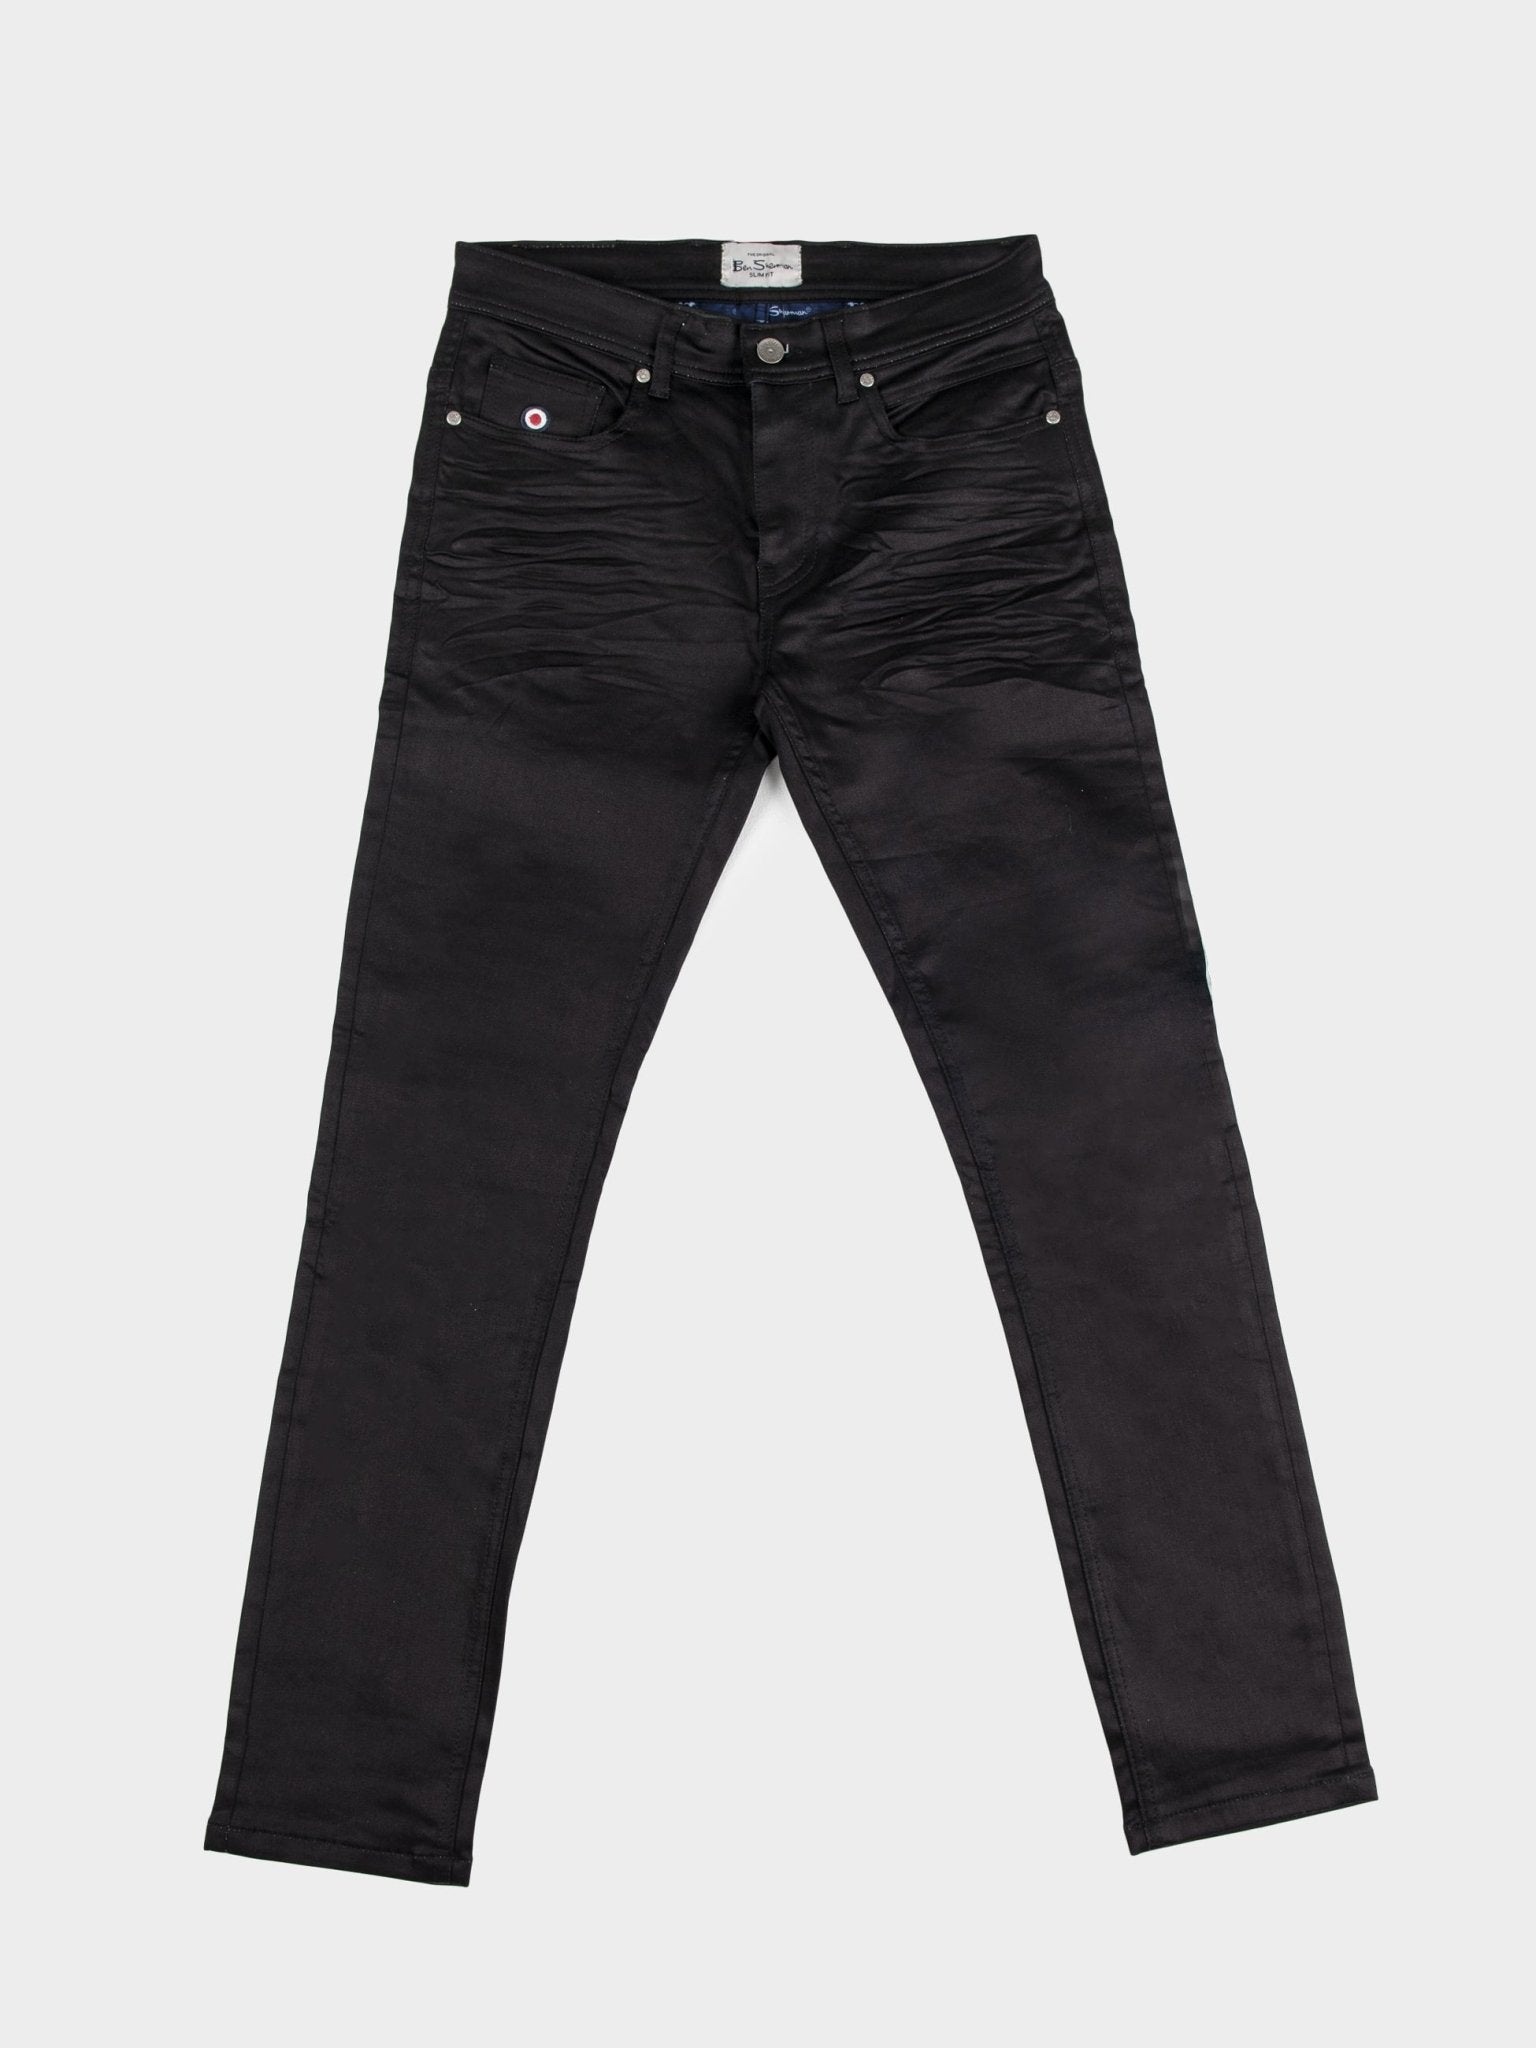 Coated Skinny Jeans - Black - Men | H&M IN